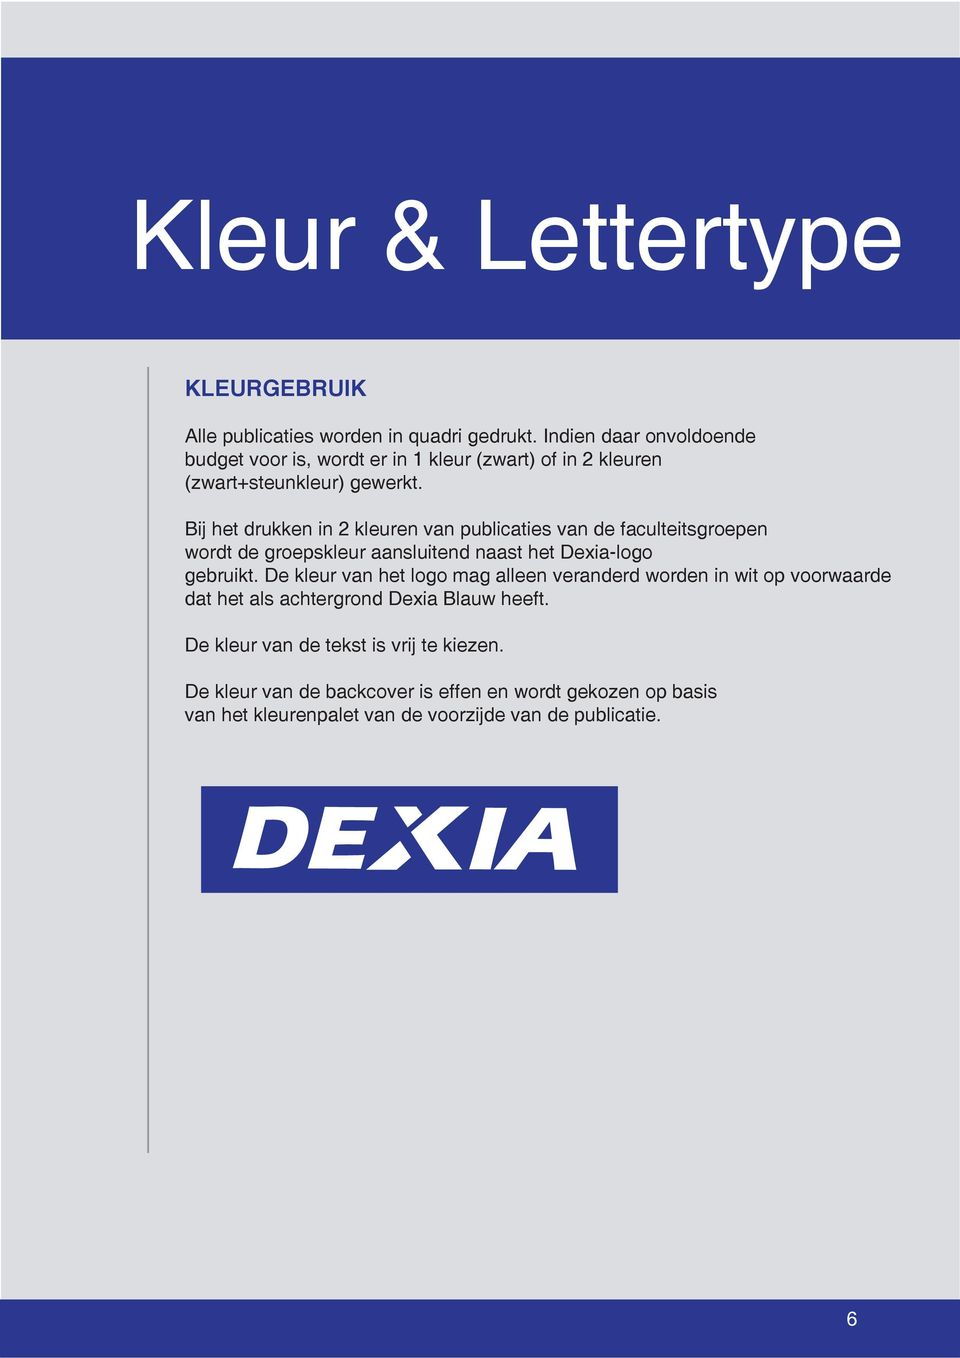 Bij het drukken in 2 kleuren van publicaties van de faculteitsgroepen wordt de groepskleur aansluitend naast het Dexia-logo gebruikt.